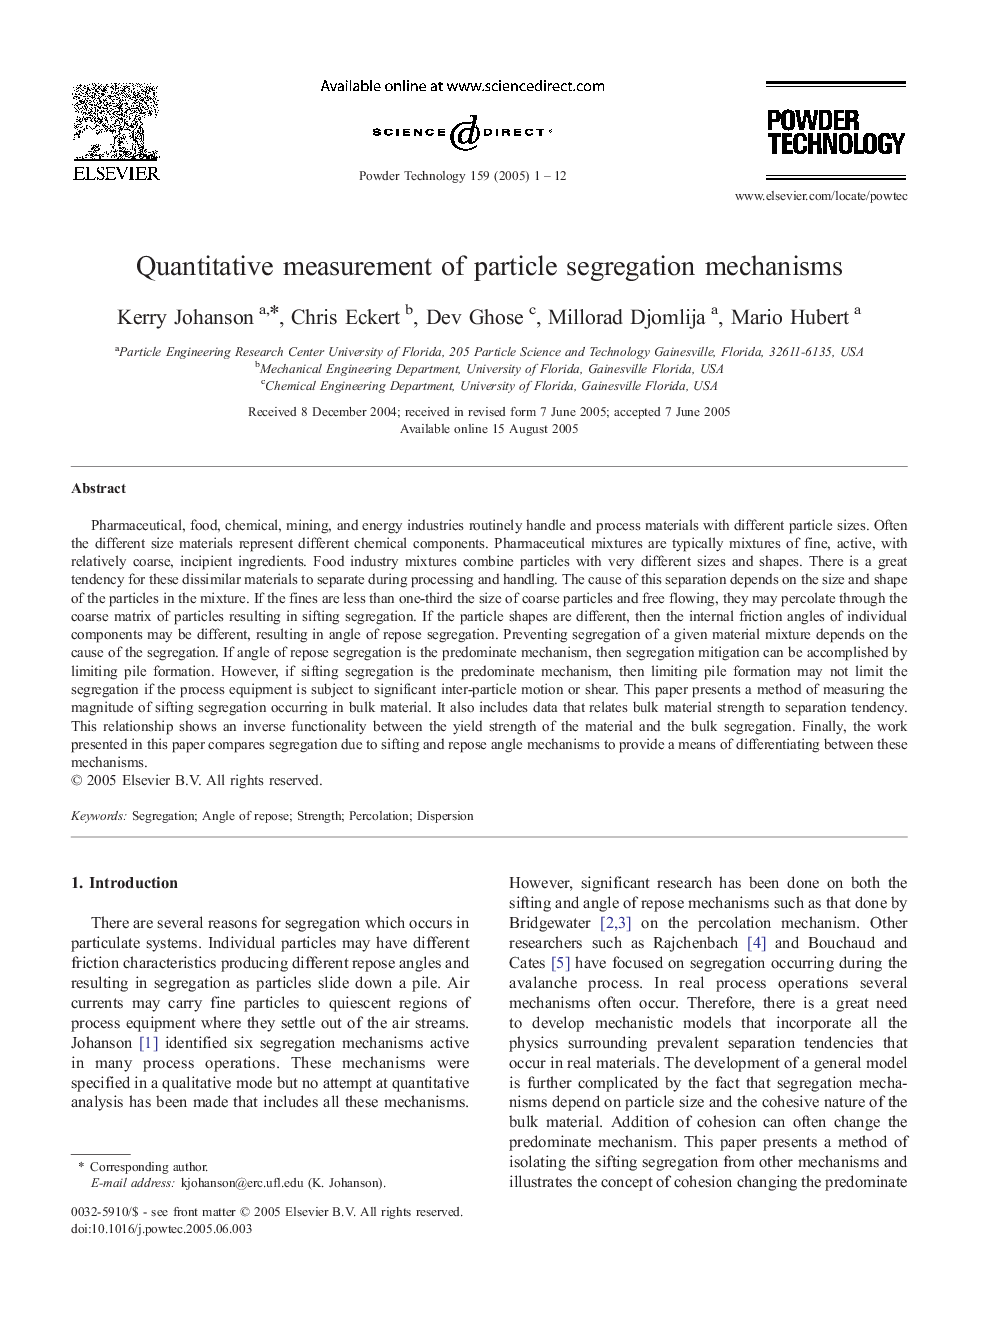 Quantitative measurement of particle segregation mechanisms